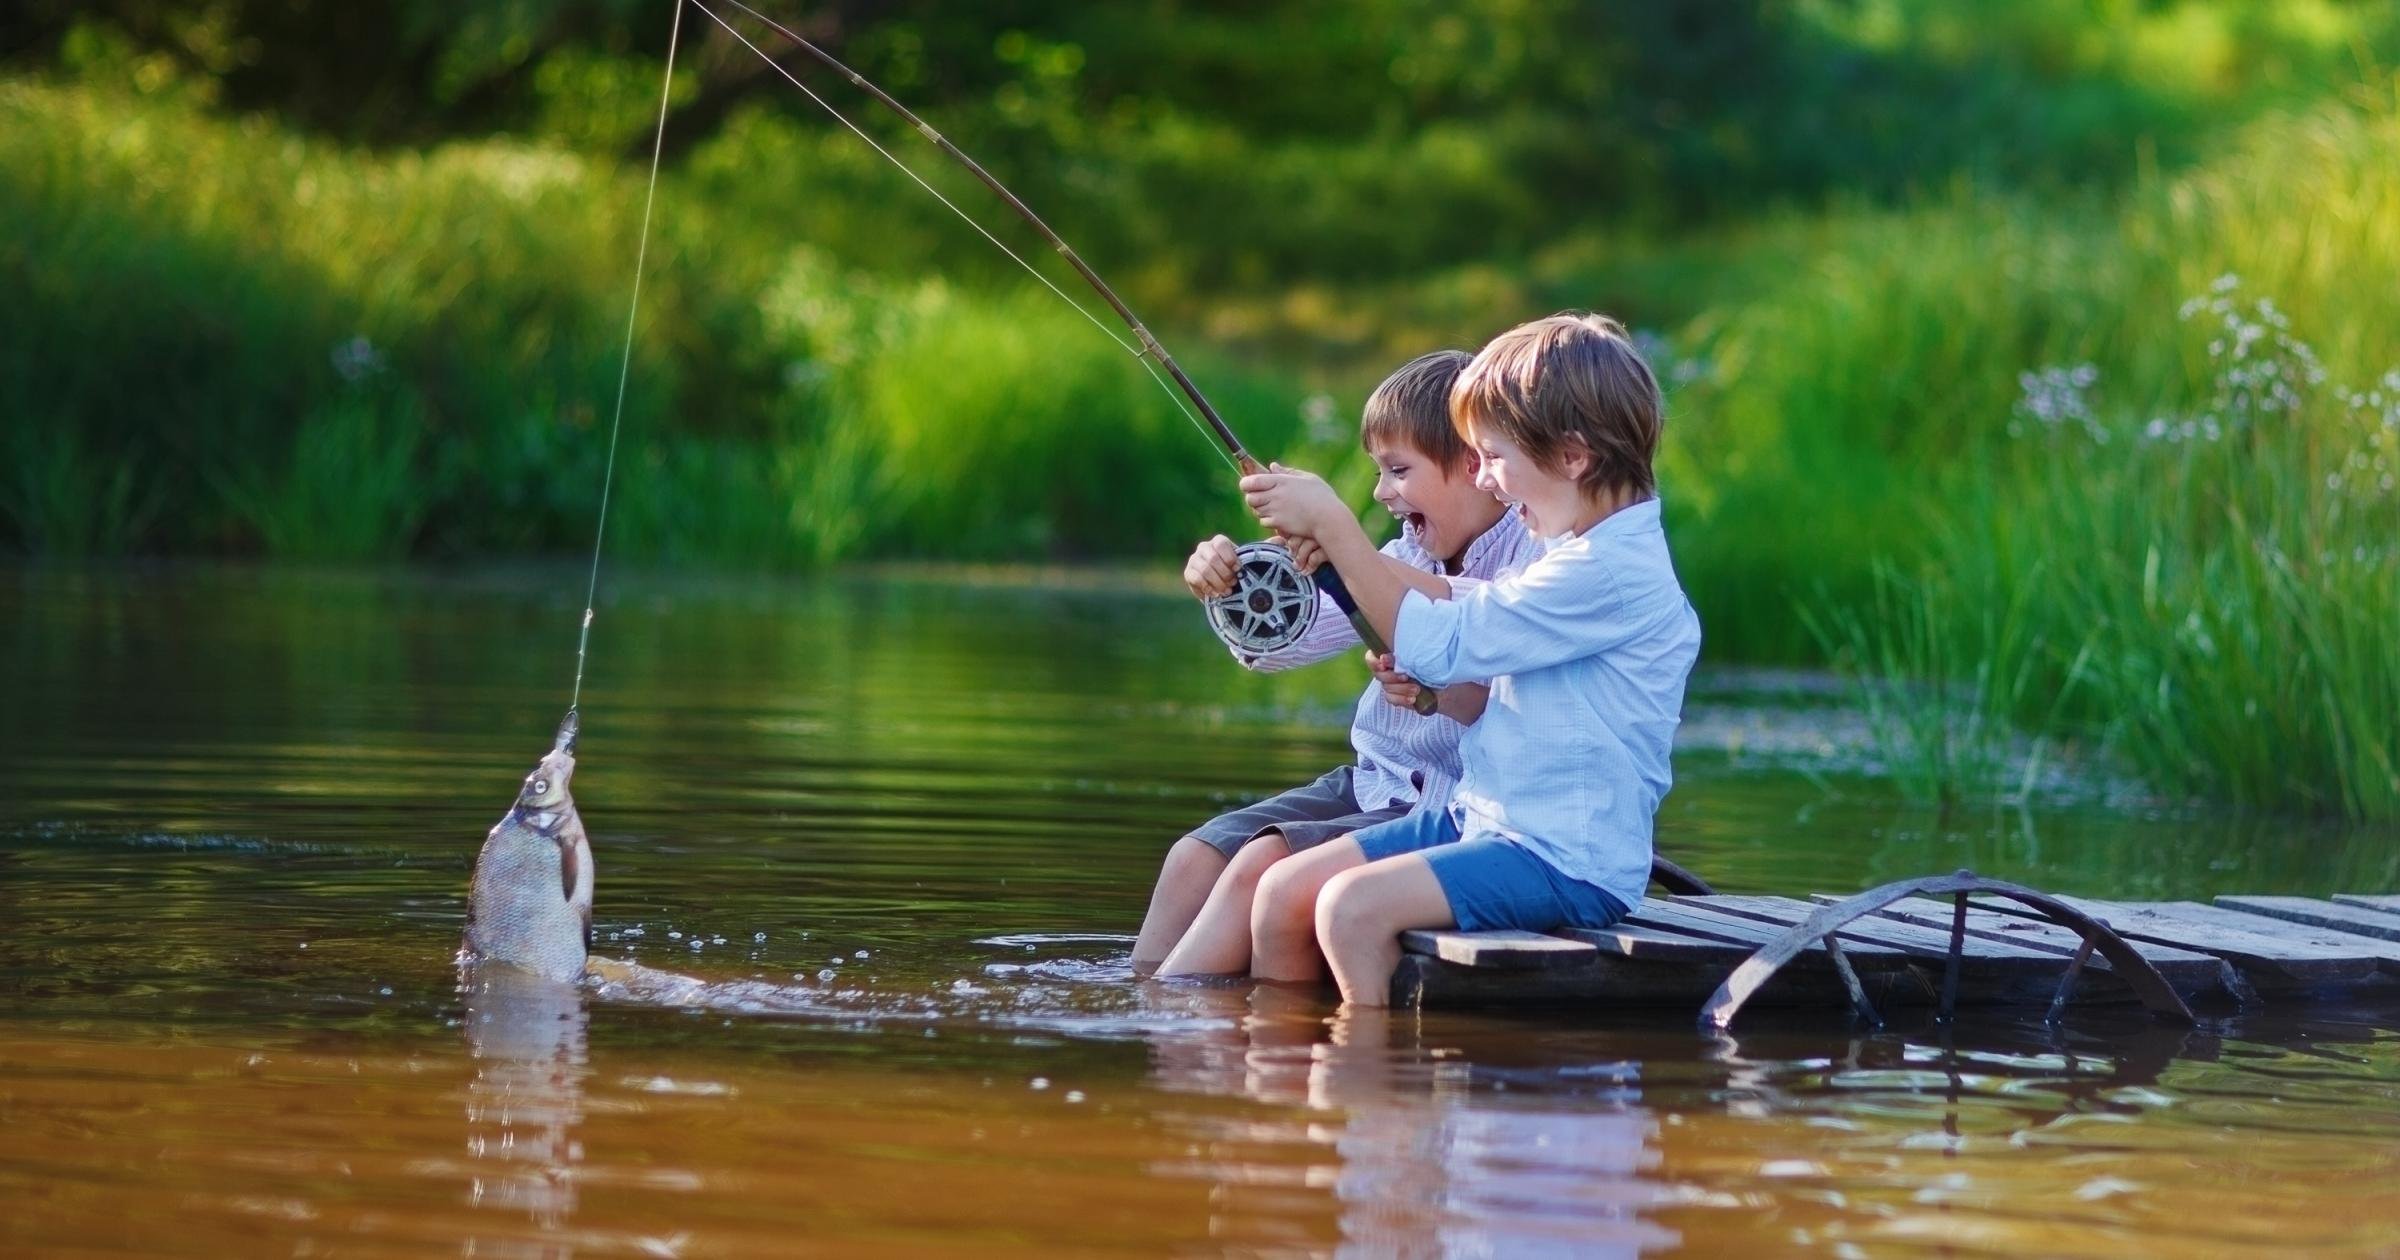 Лов лете. Лето рыбалка. Рыбалка летом. Мальчик с удочкой. Детская фотосессия рыбалка.